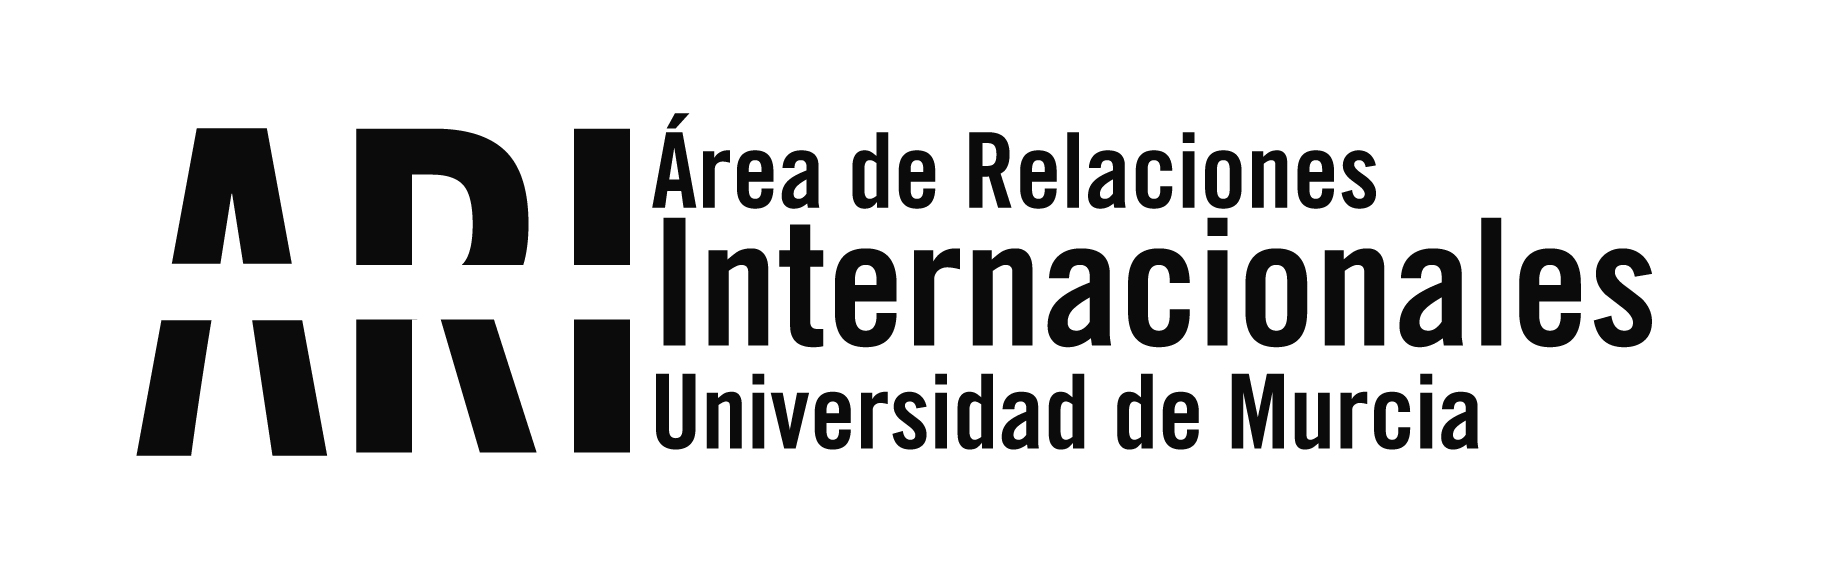 Boletín informativo/Newsletter nº 14 del Vicerrectorado de Internacionalización de la UMU del lunes 5 de noviembre de 2018 - Área de Relaciones Internacionales